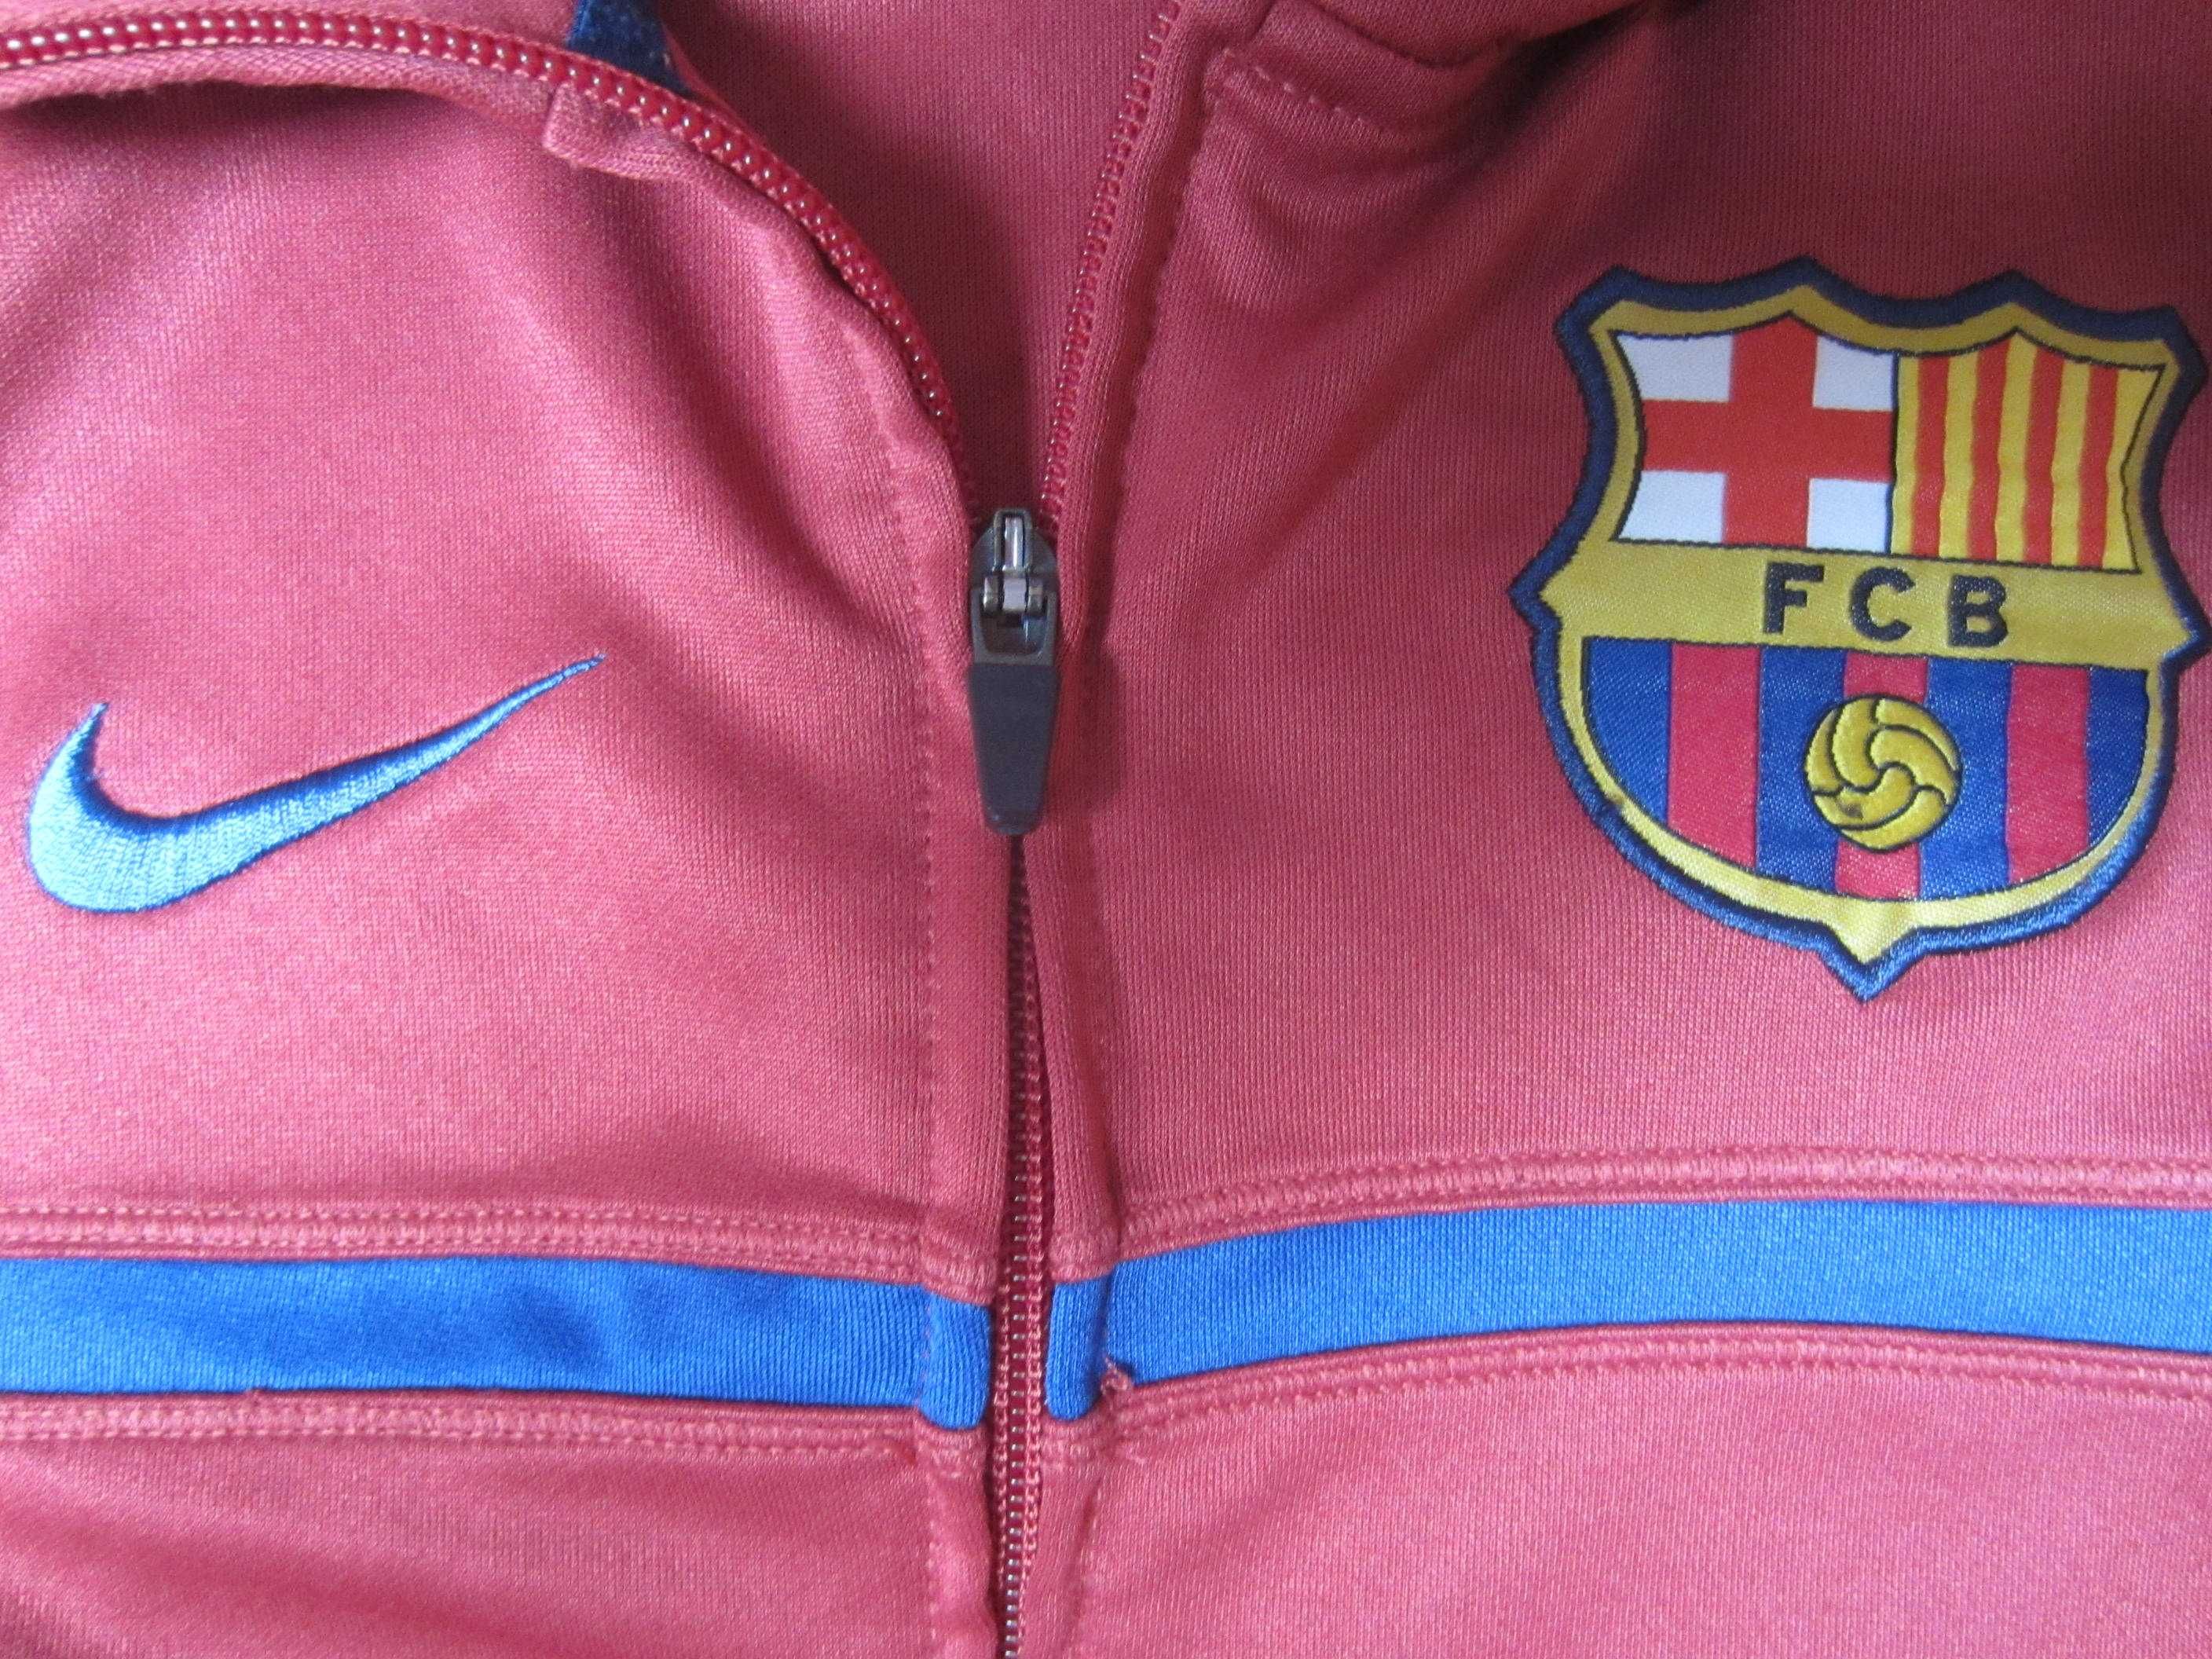 Bluza trening Barcelona, masura S, Nike, stare foarte buna